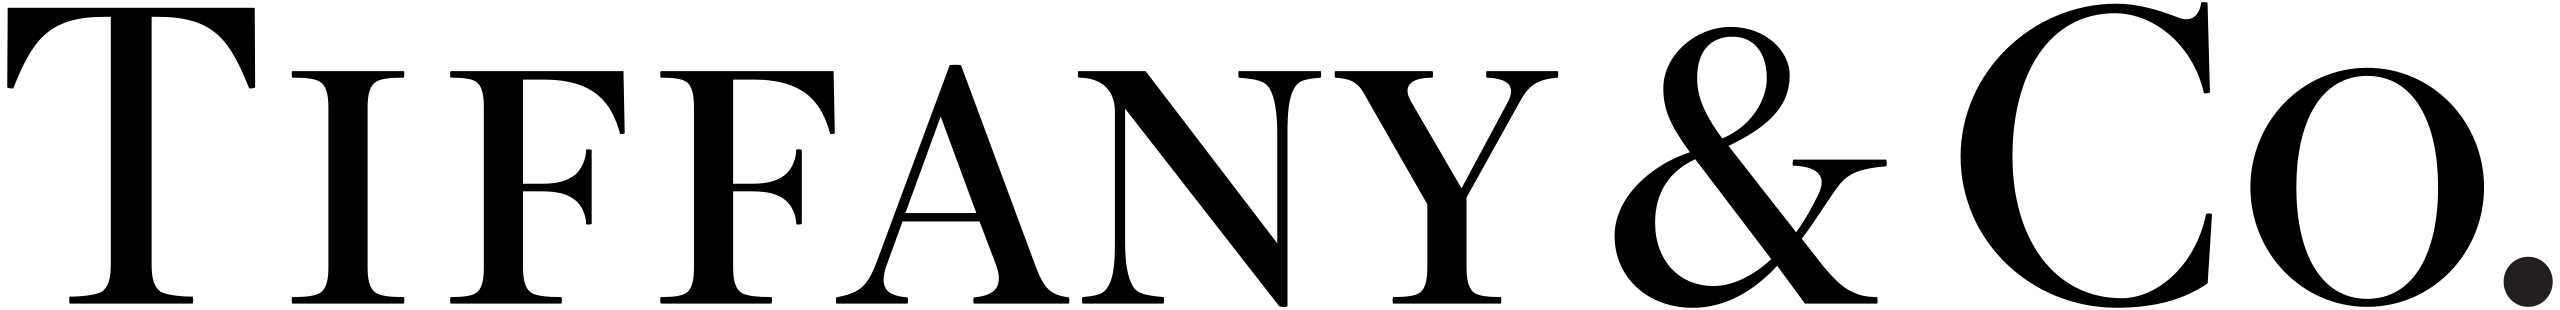 Tiffany_Logo